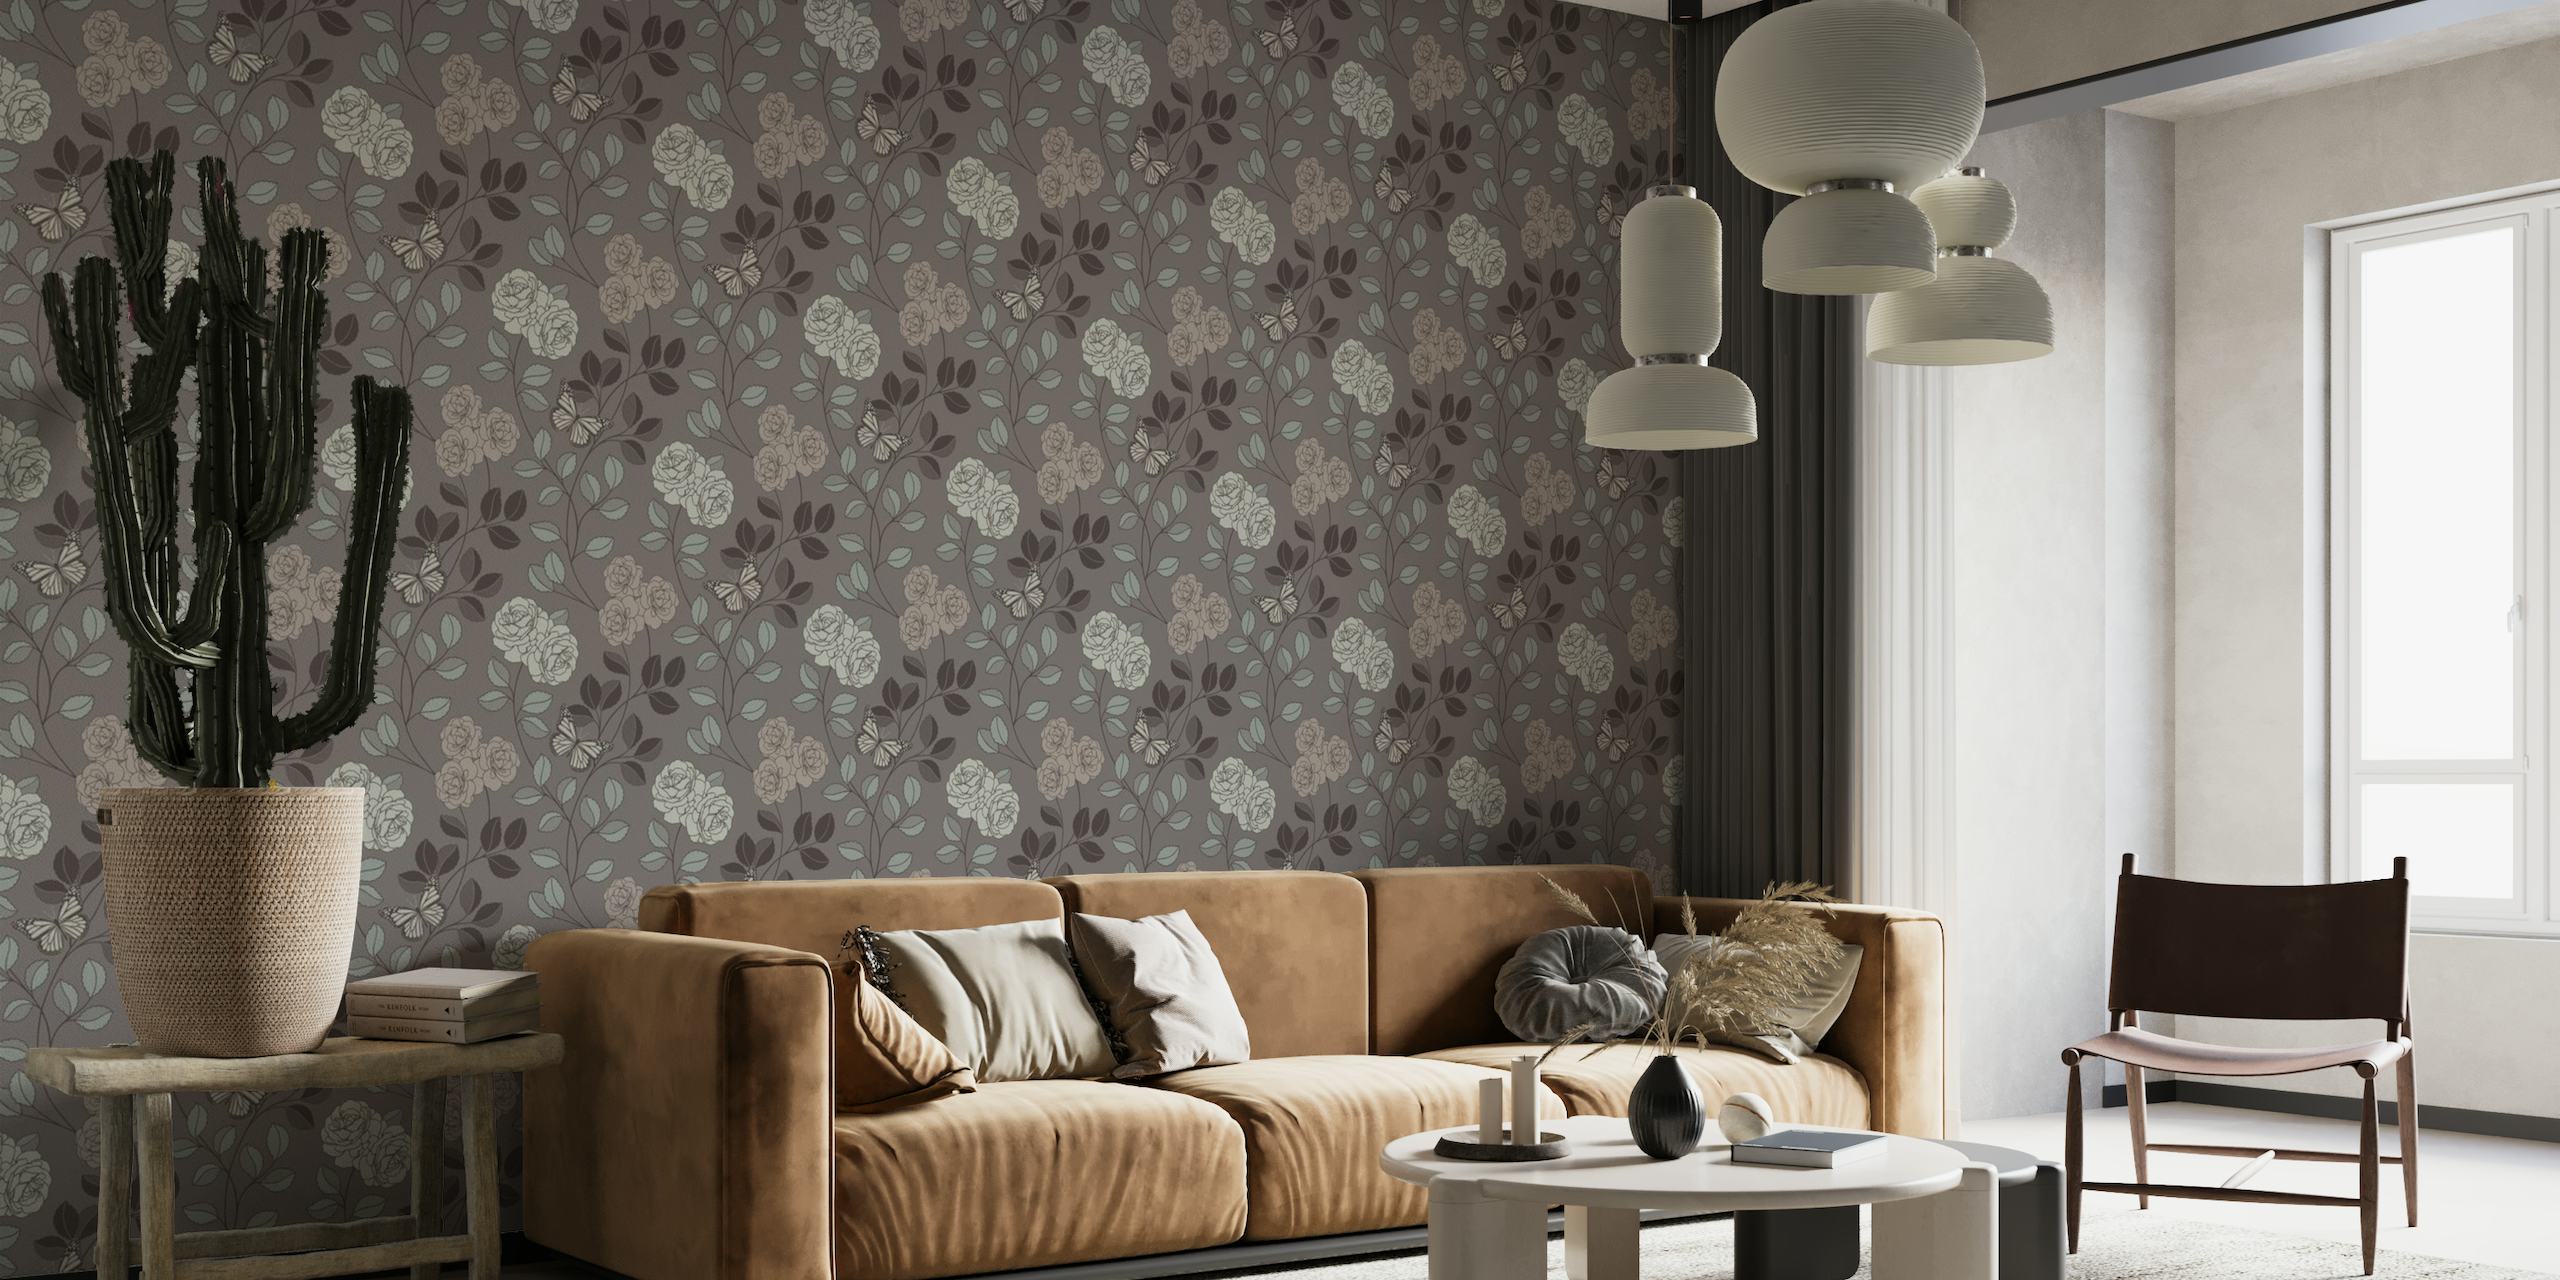 Elegante grijze fotobehang met geschetste bloemen en vlinders voor een rustige huiselijke sfeer.